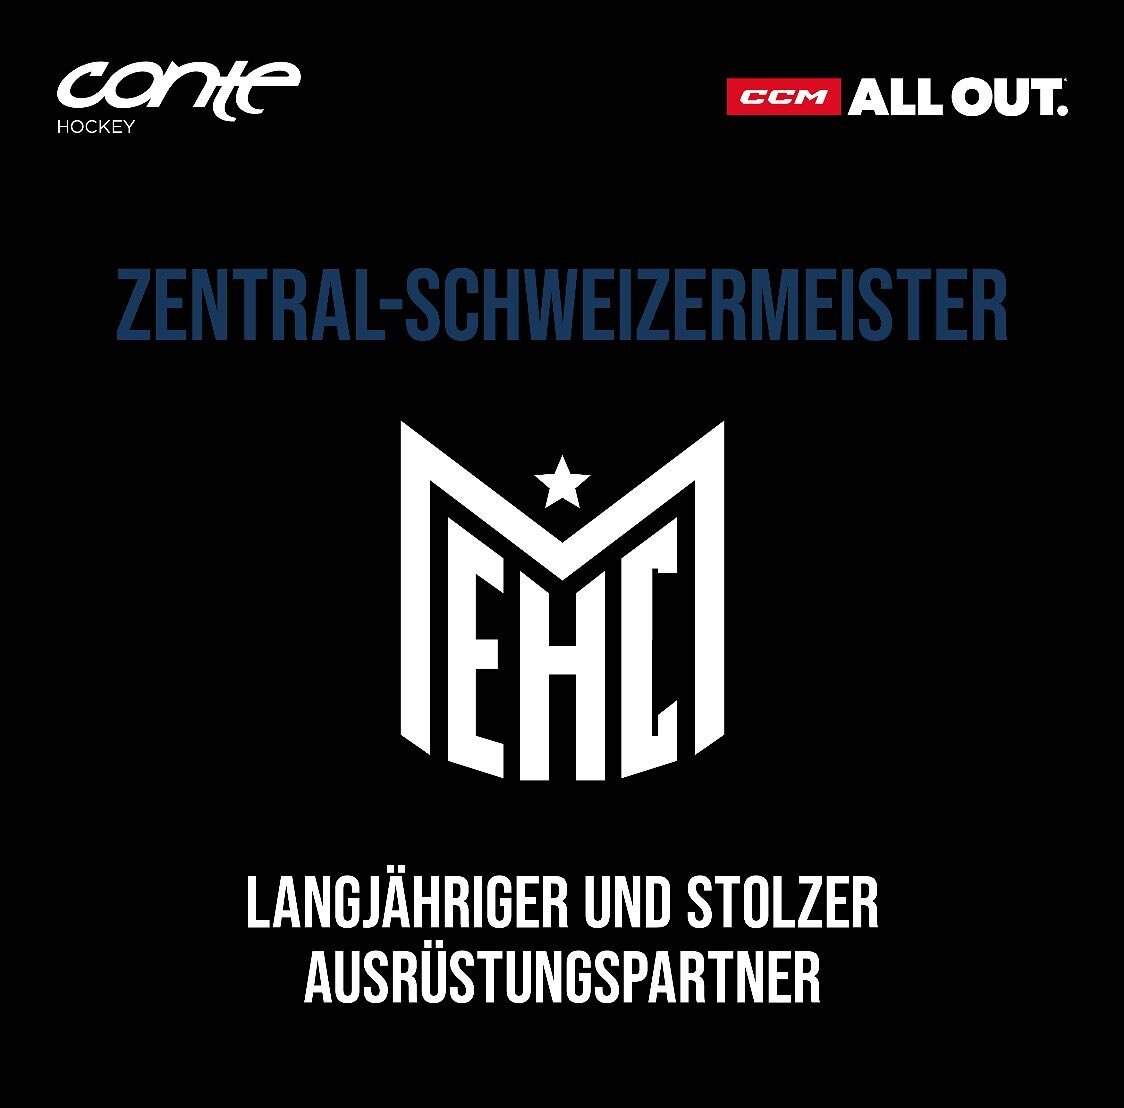 Herzliche Gratulation zum wiederholten Zentral-Schweizermeister der 2. Liga lieber @ehc_meinisberg 🏆🥇 Well done. Wir sind stolz auf unsere gemeinsame Zusammenarbeit.

#meister